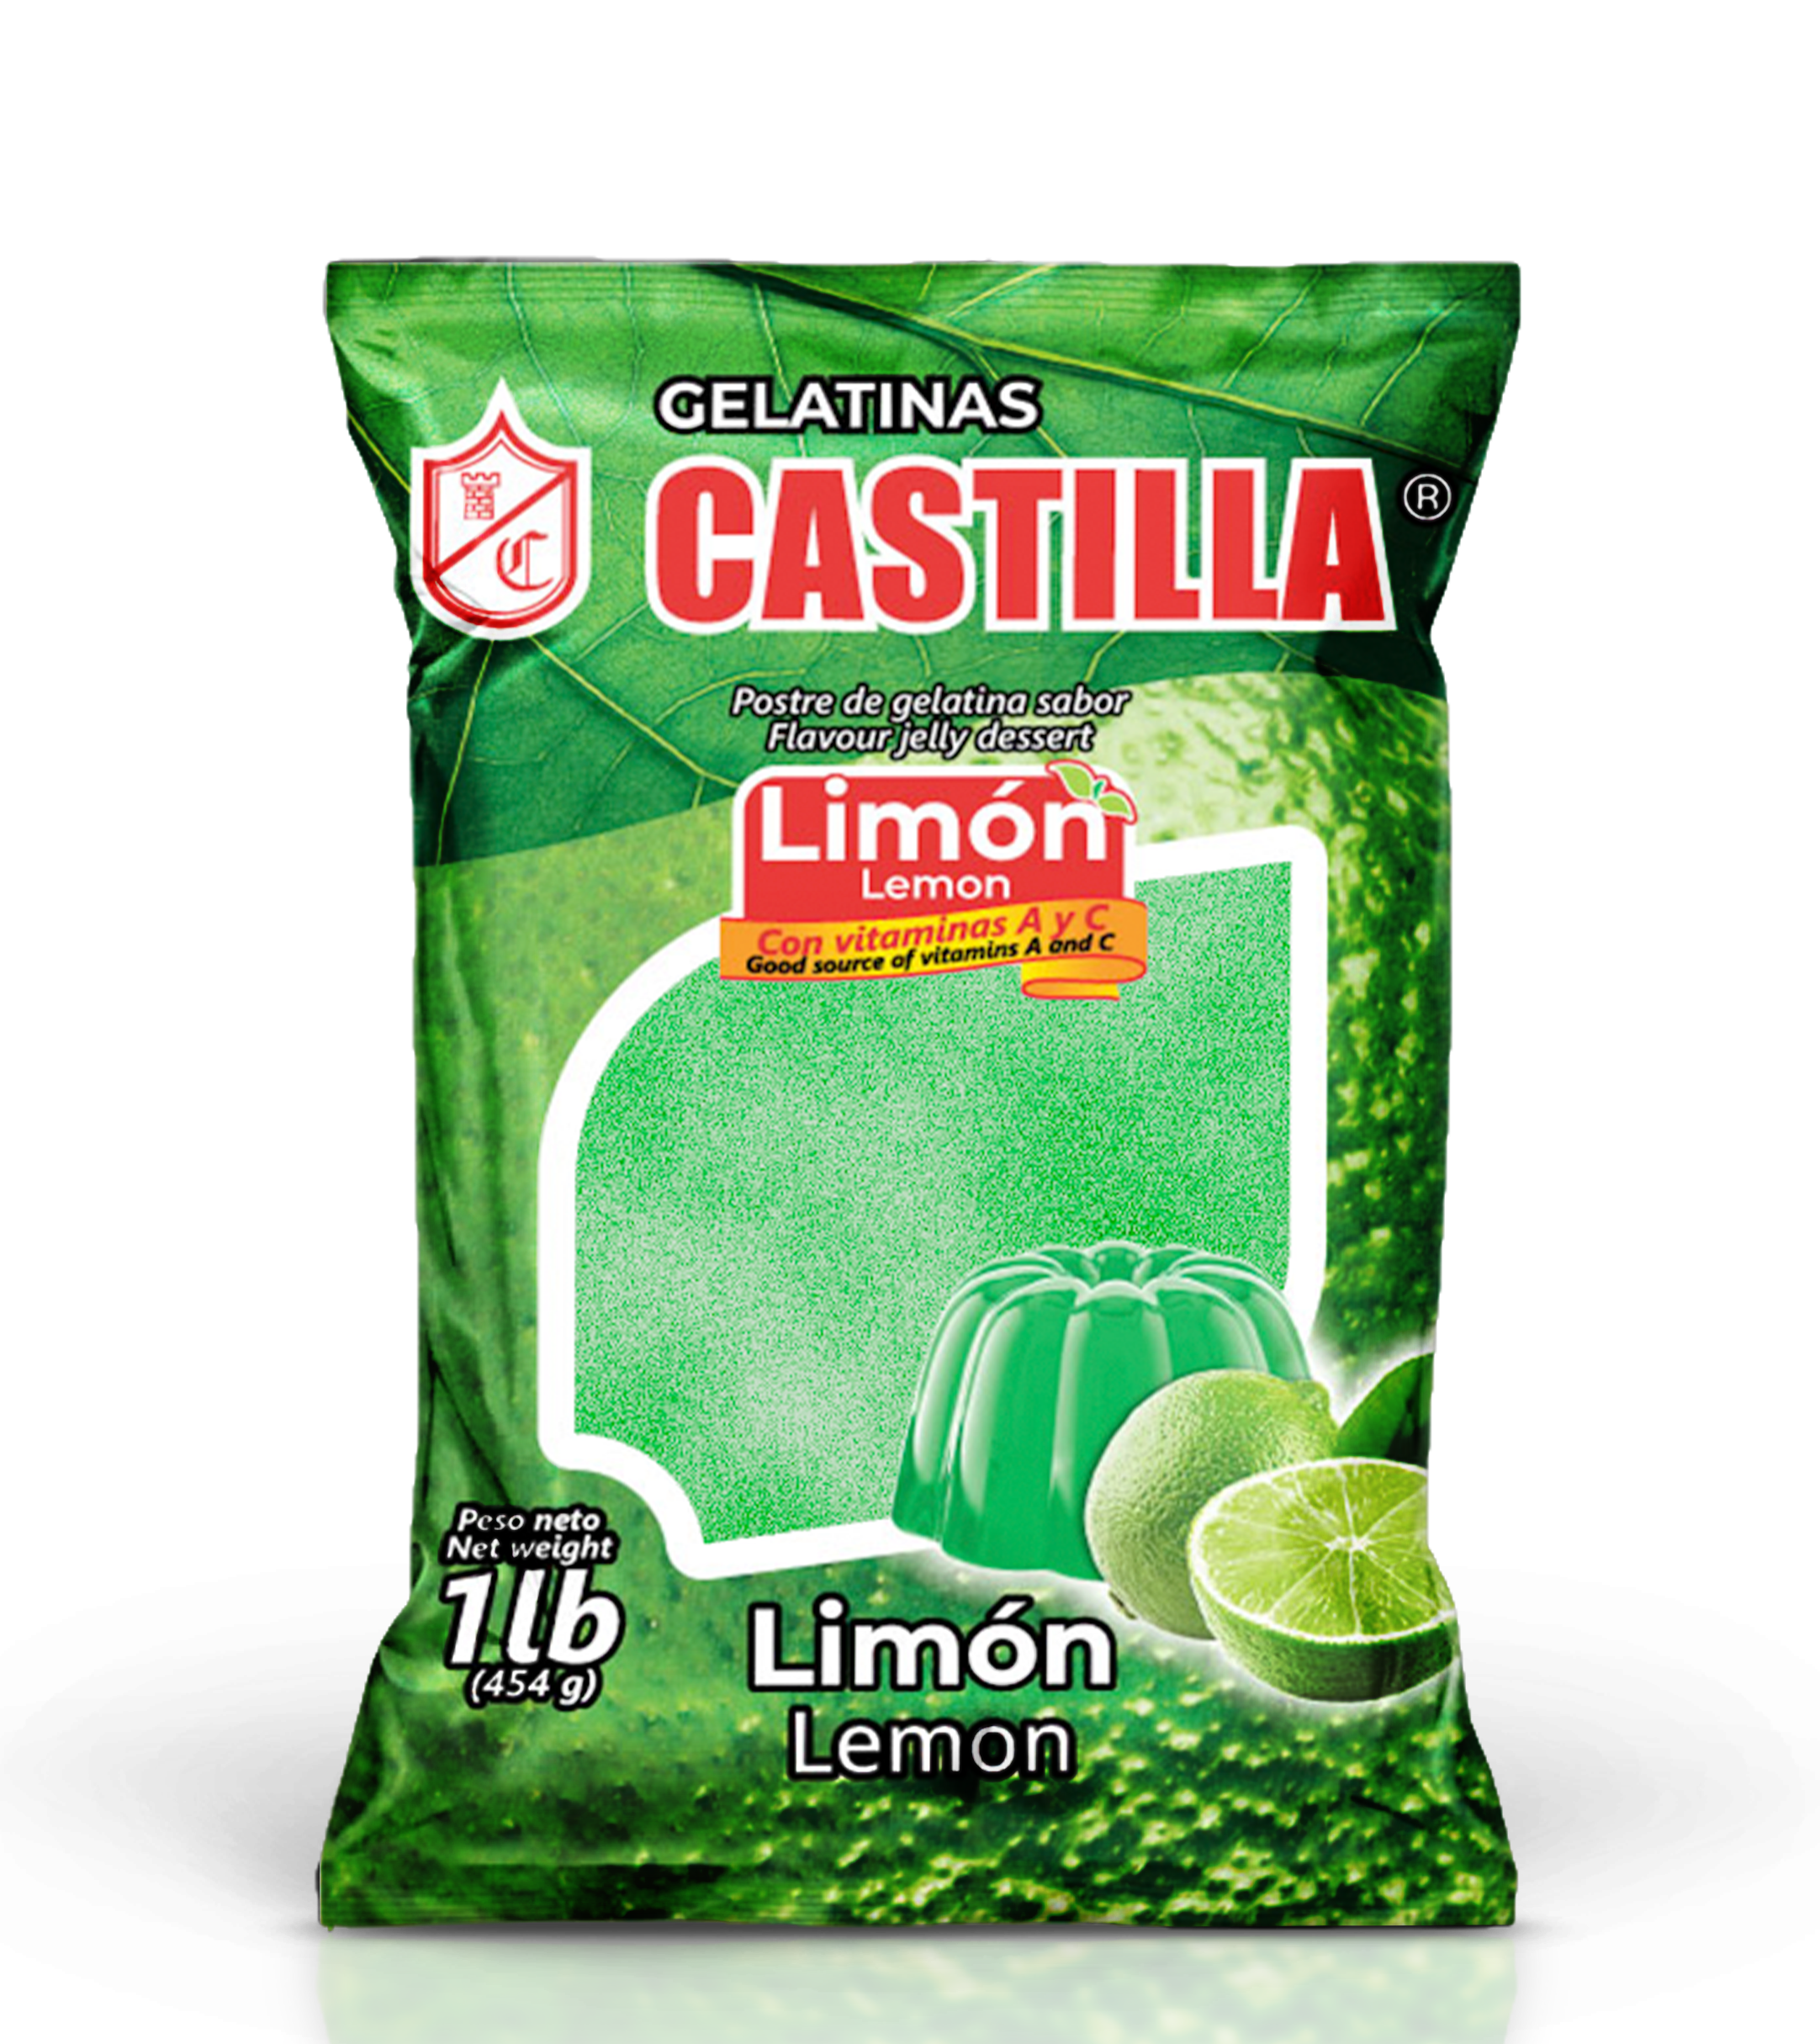 Gelatina Castilla Regular Limón 454g 1